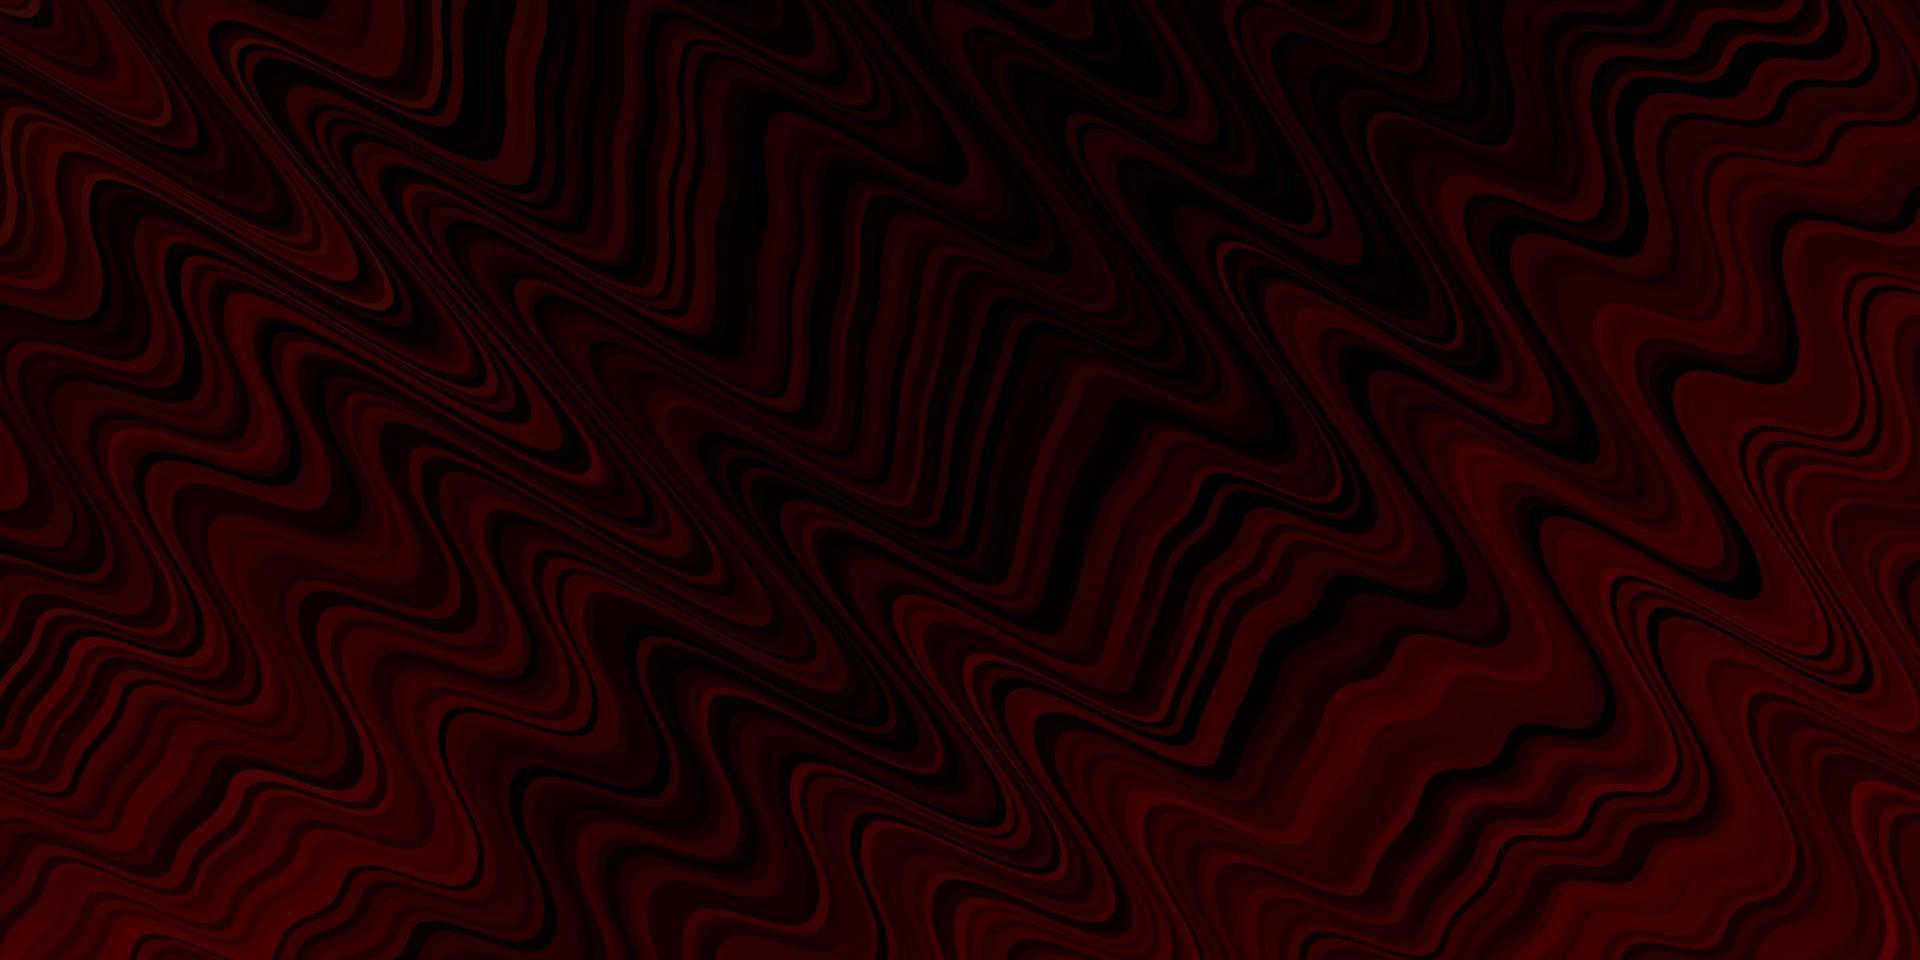 Fondo de vector rojo oscuro con líneas dobladas.